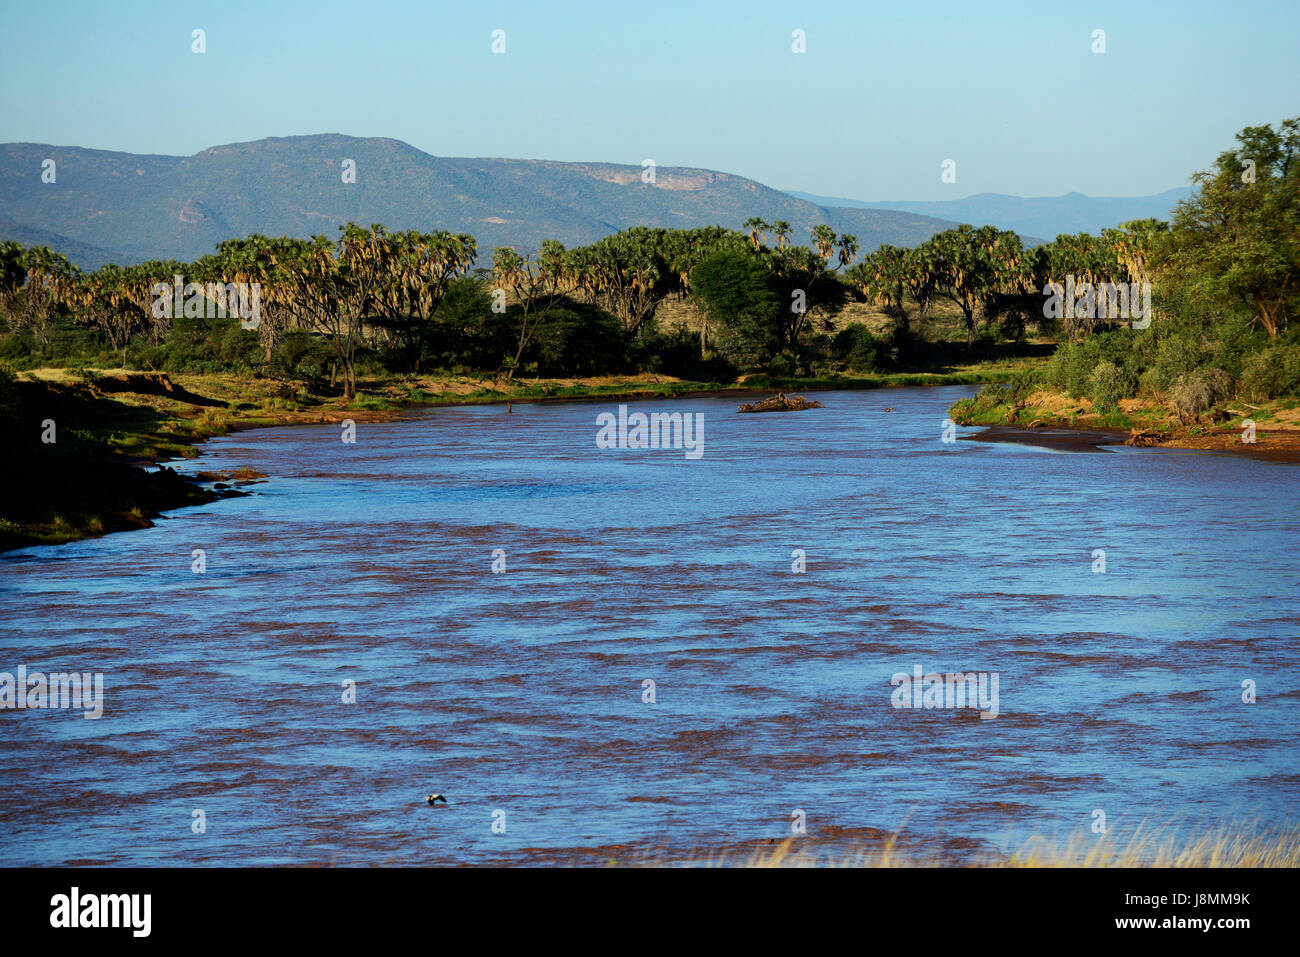 The  Ewaso Ng'iro river flows between Samburu national reserve and Buffalo springs national park. Stock Photo